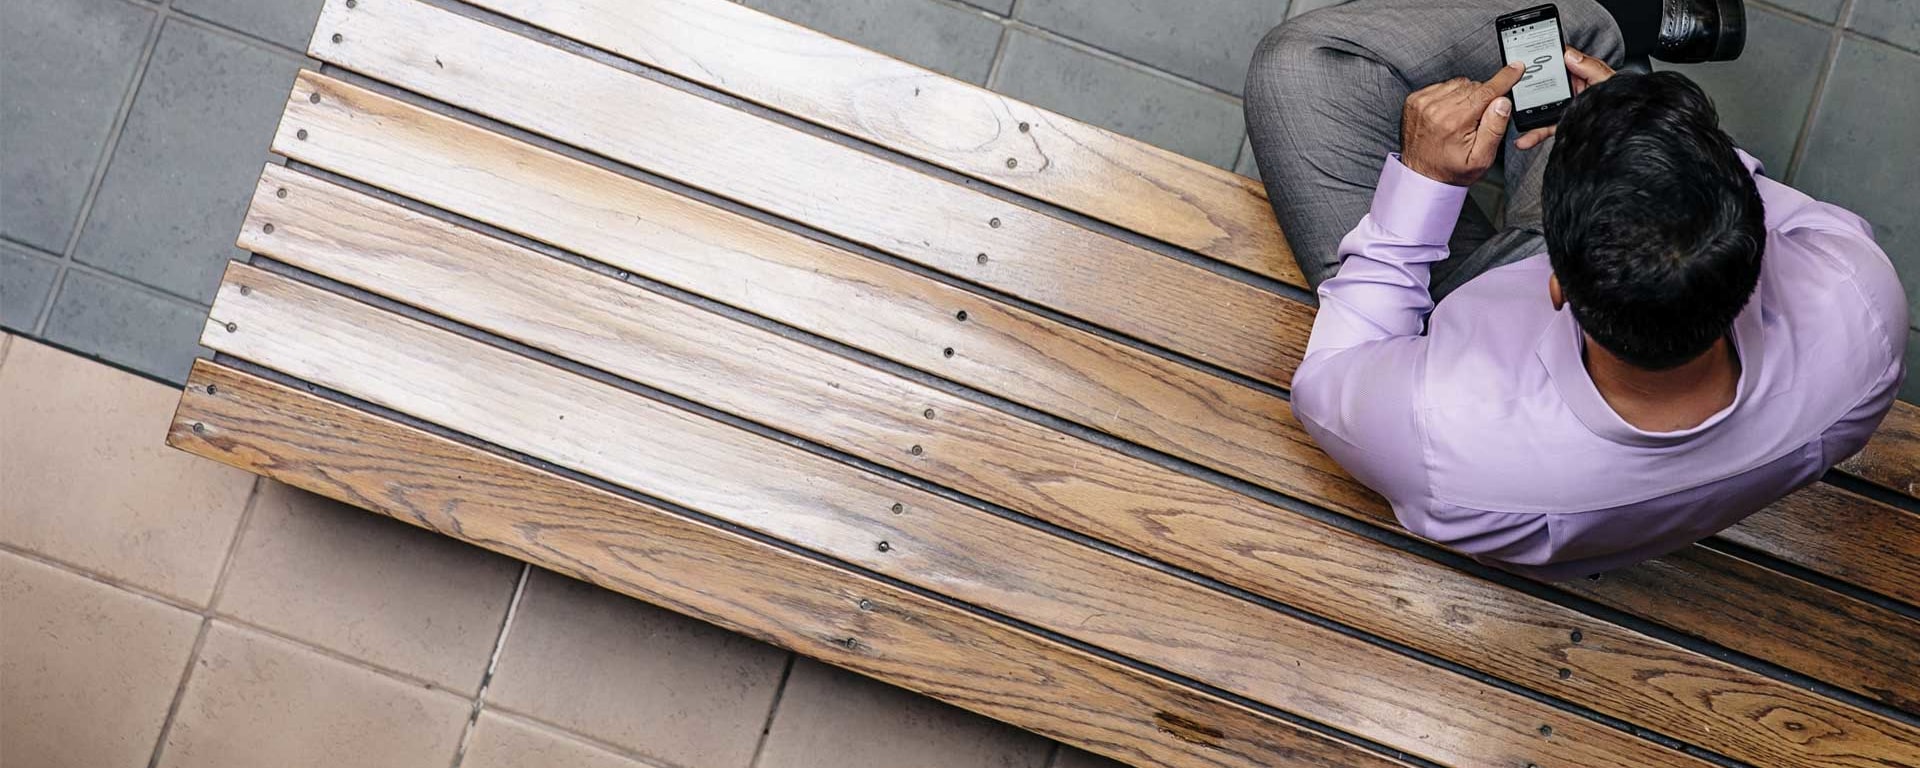 Un hombre está sentado en un banco de madera y mira una publicación en su teléfono inteligente.